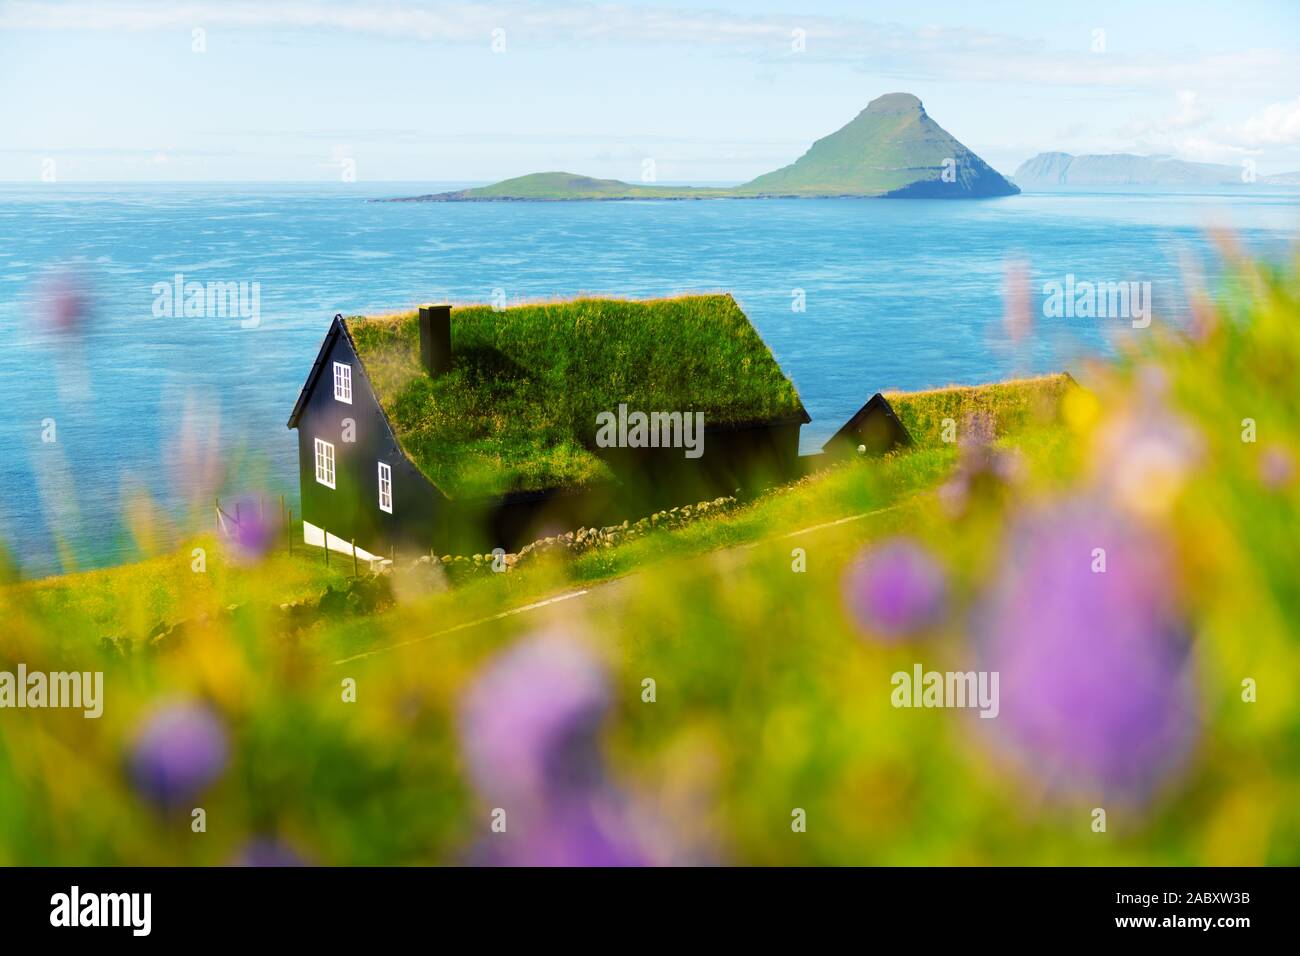 Matin brumeux vue d'une maison typique avec de l'herbe à gazon haut pavillon dans le village de Velbastadur sur Streymoy island, îles Féroé, Danemark. Photographie de paysage Banque D'Images